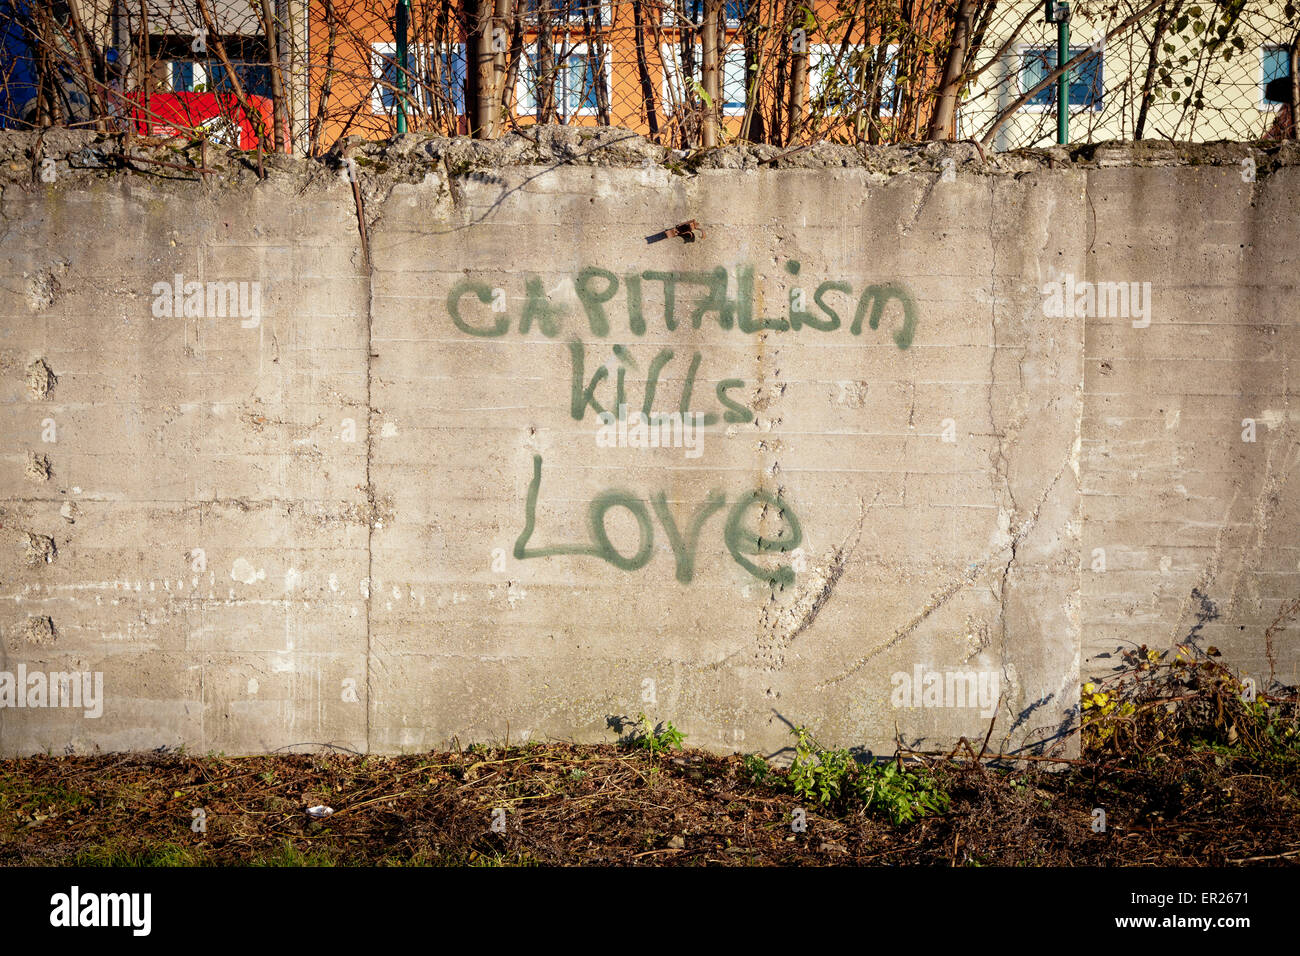 Europa, Deutschland, Nordrhein-Westfalen, Koeln, Graffiti Kapitalismus toetet die Liebe an einer Mauer an Deutzer Rheinufer.  Eu Stock Photo